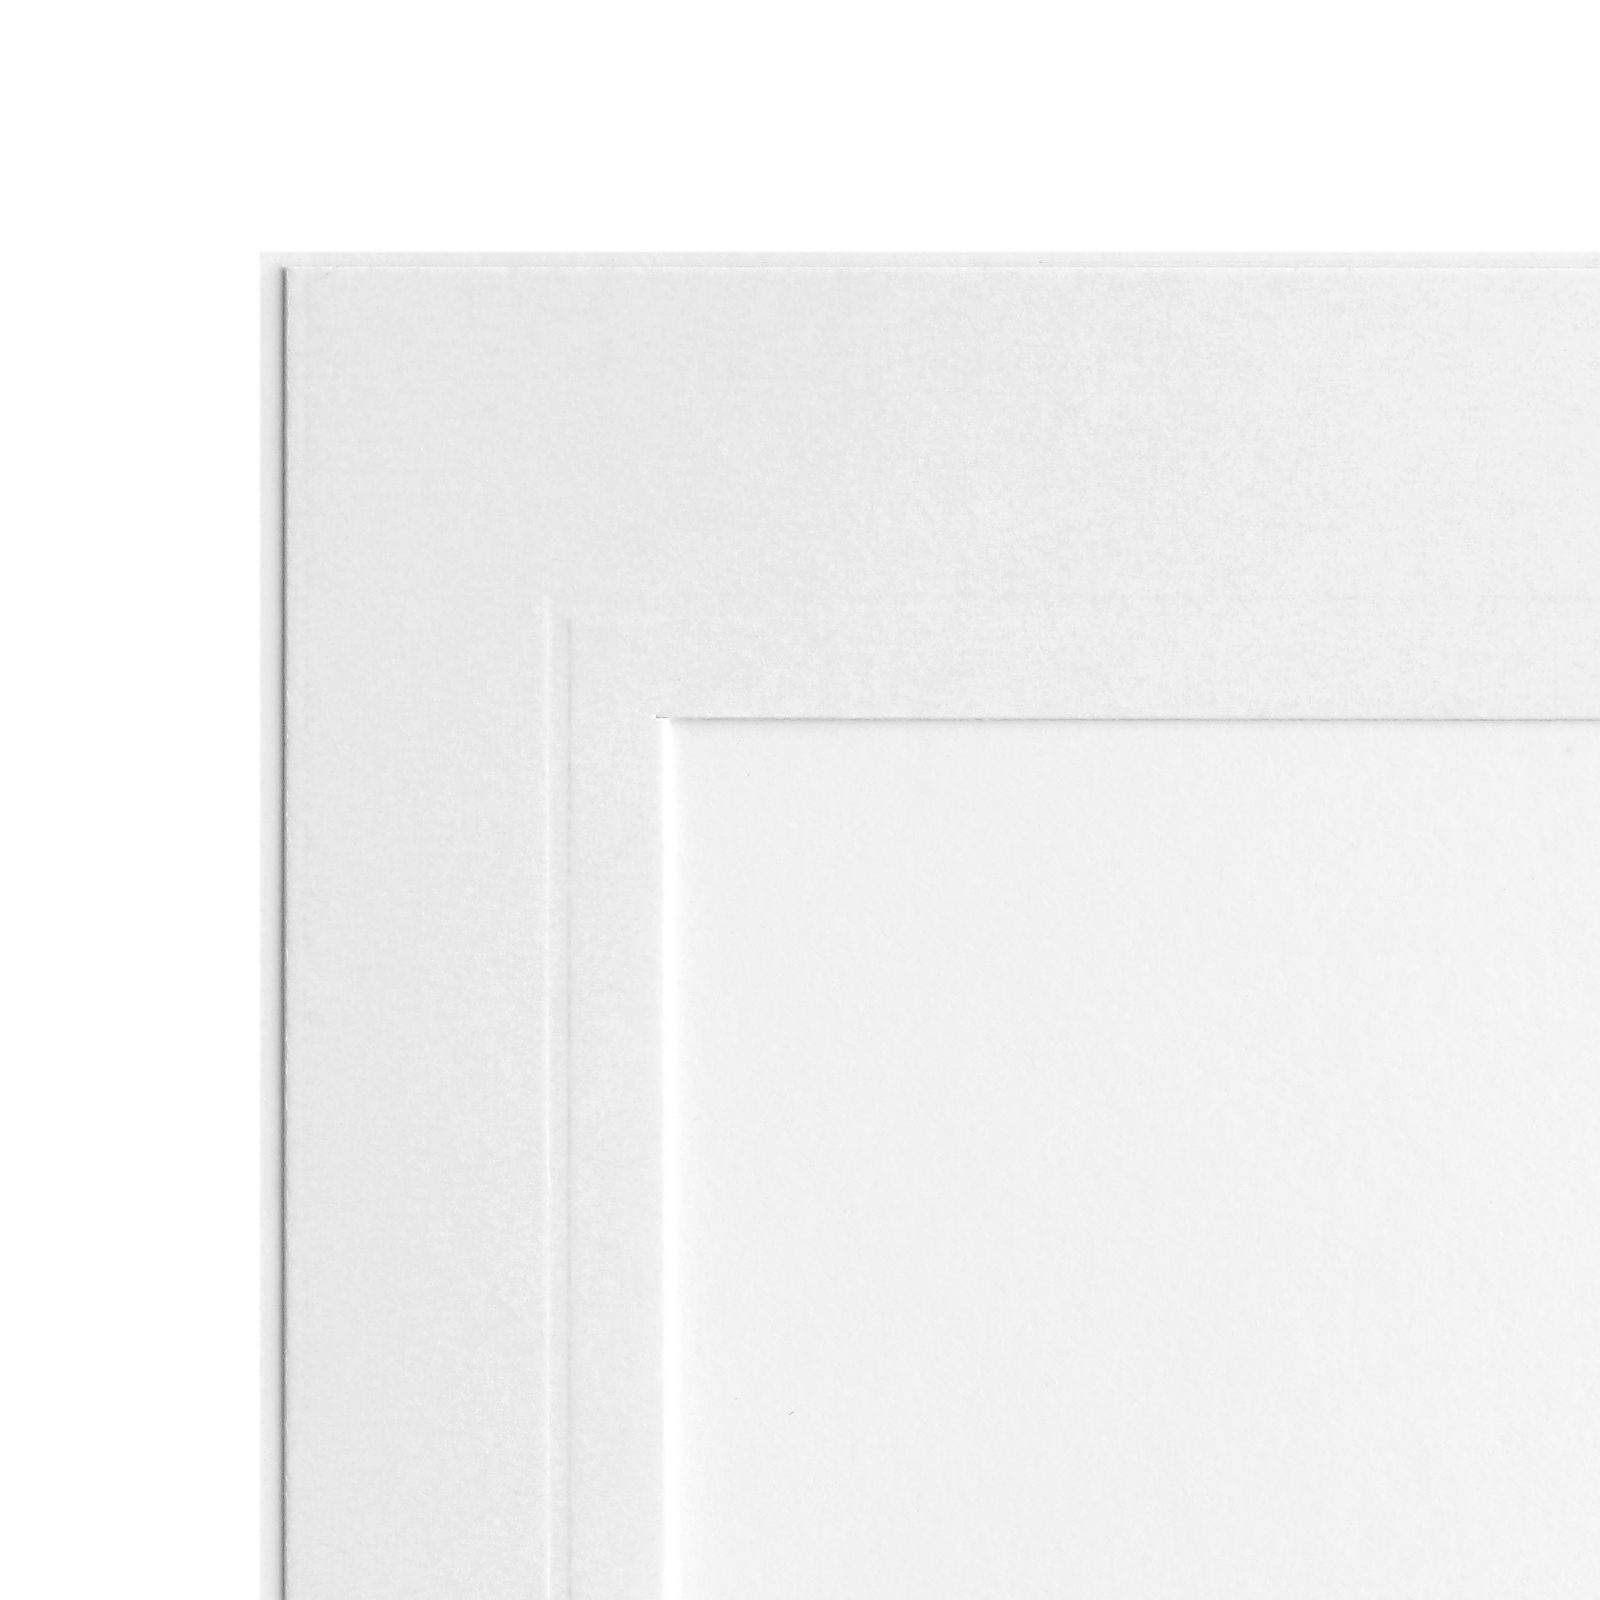 Endlosleporello 25 Teile - 13x18 cm - weiß - geprägter Rand